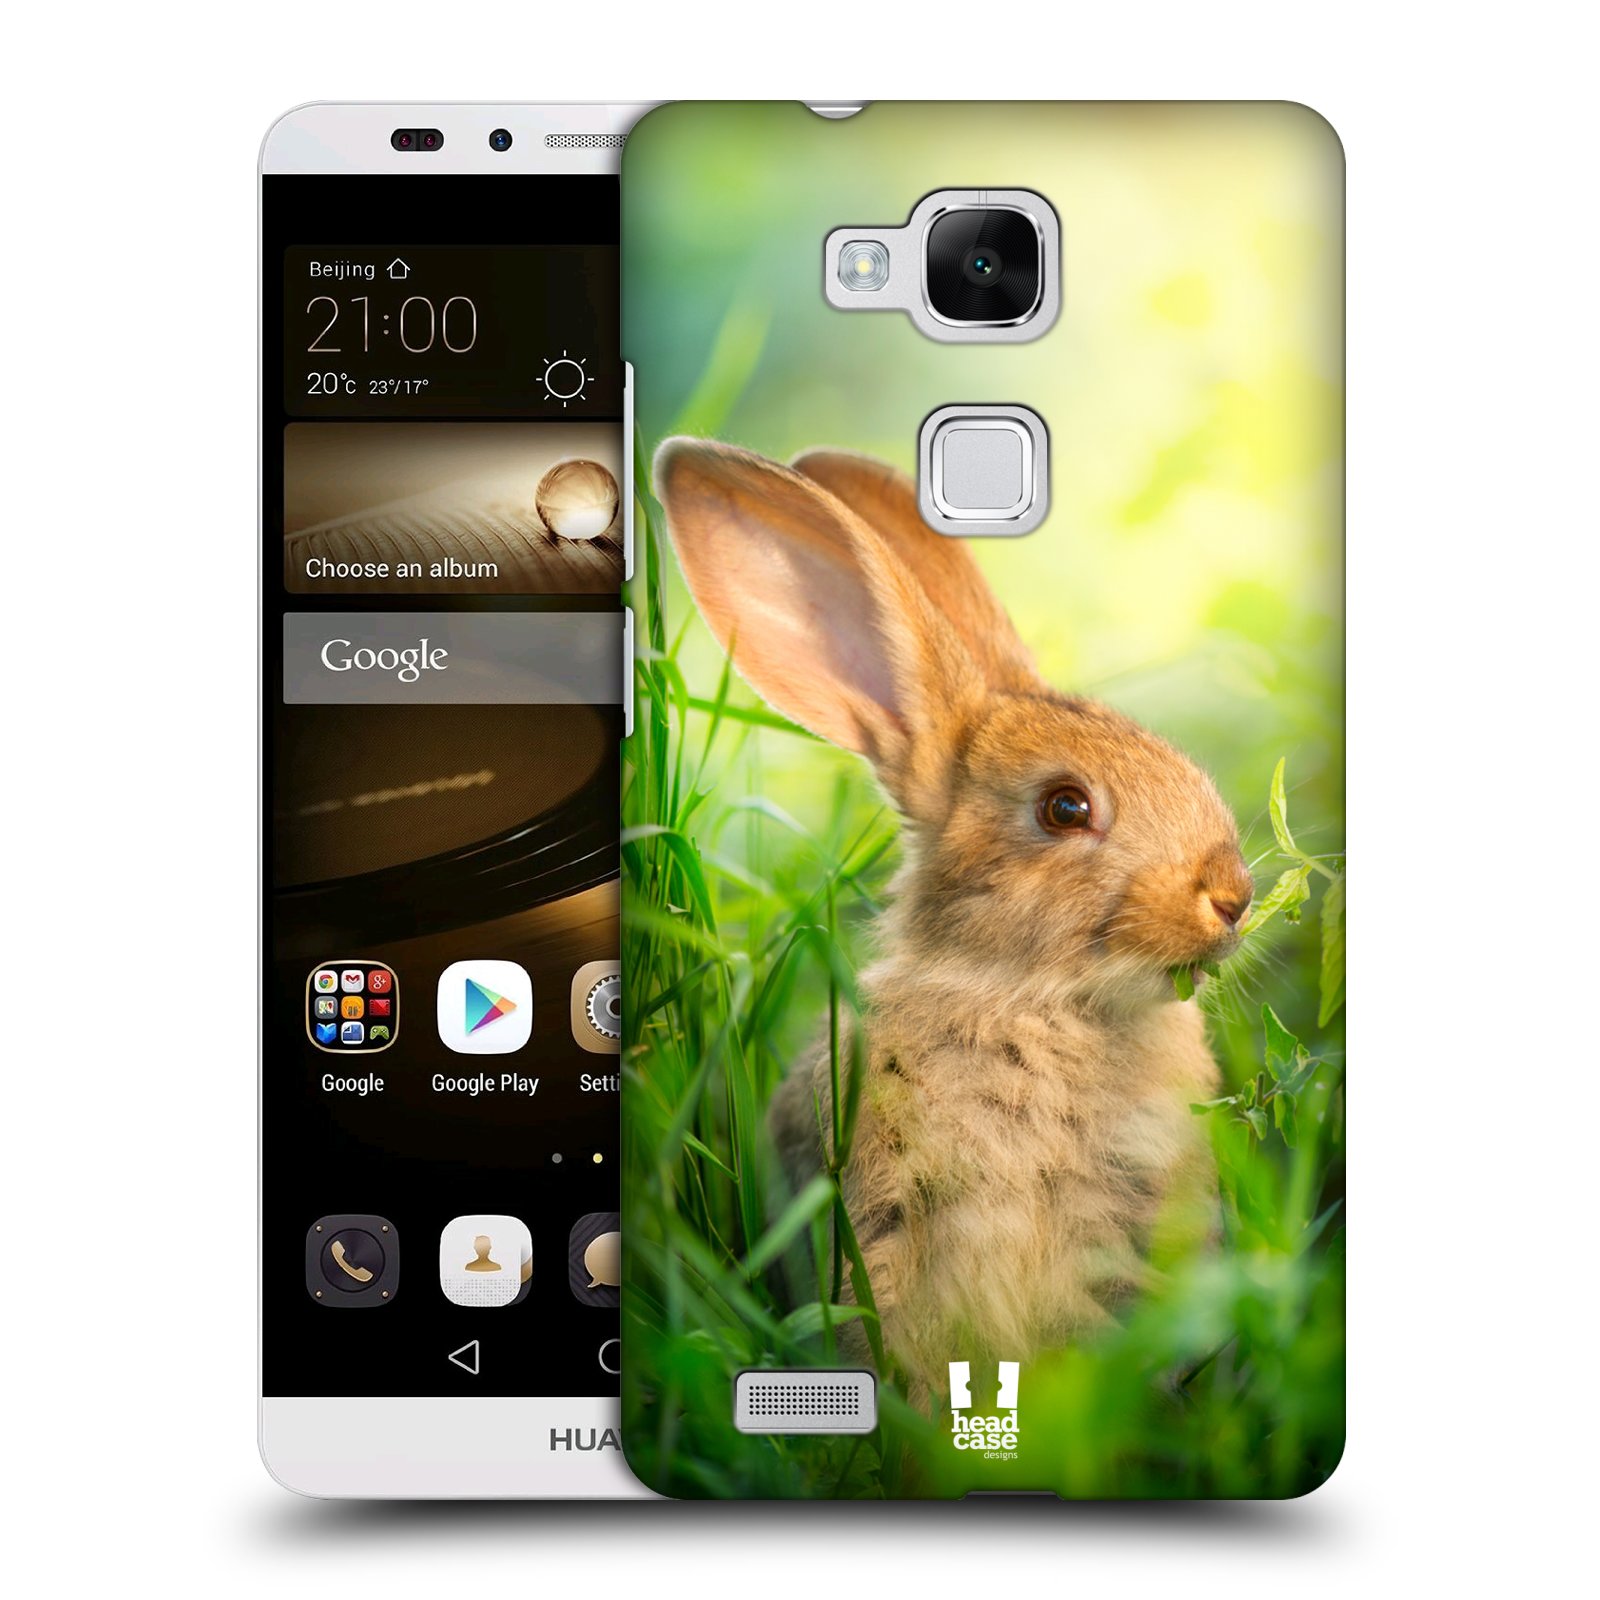 HEAD CASE plastový obal na mobil Huawei Mate 7 vzor Divočina, Divoký život a zvířata foto ZAJÍČEK V TRÁVĚ ZELENÁ